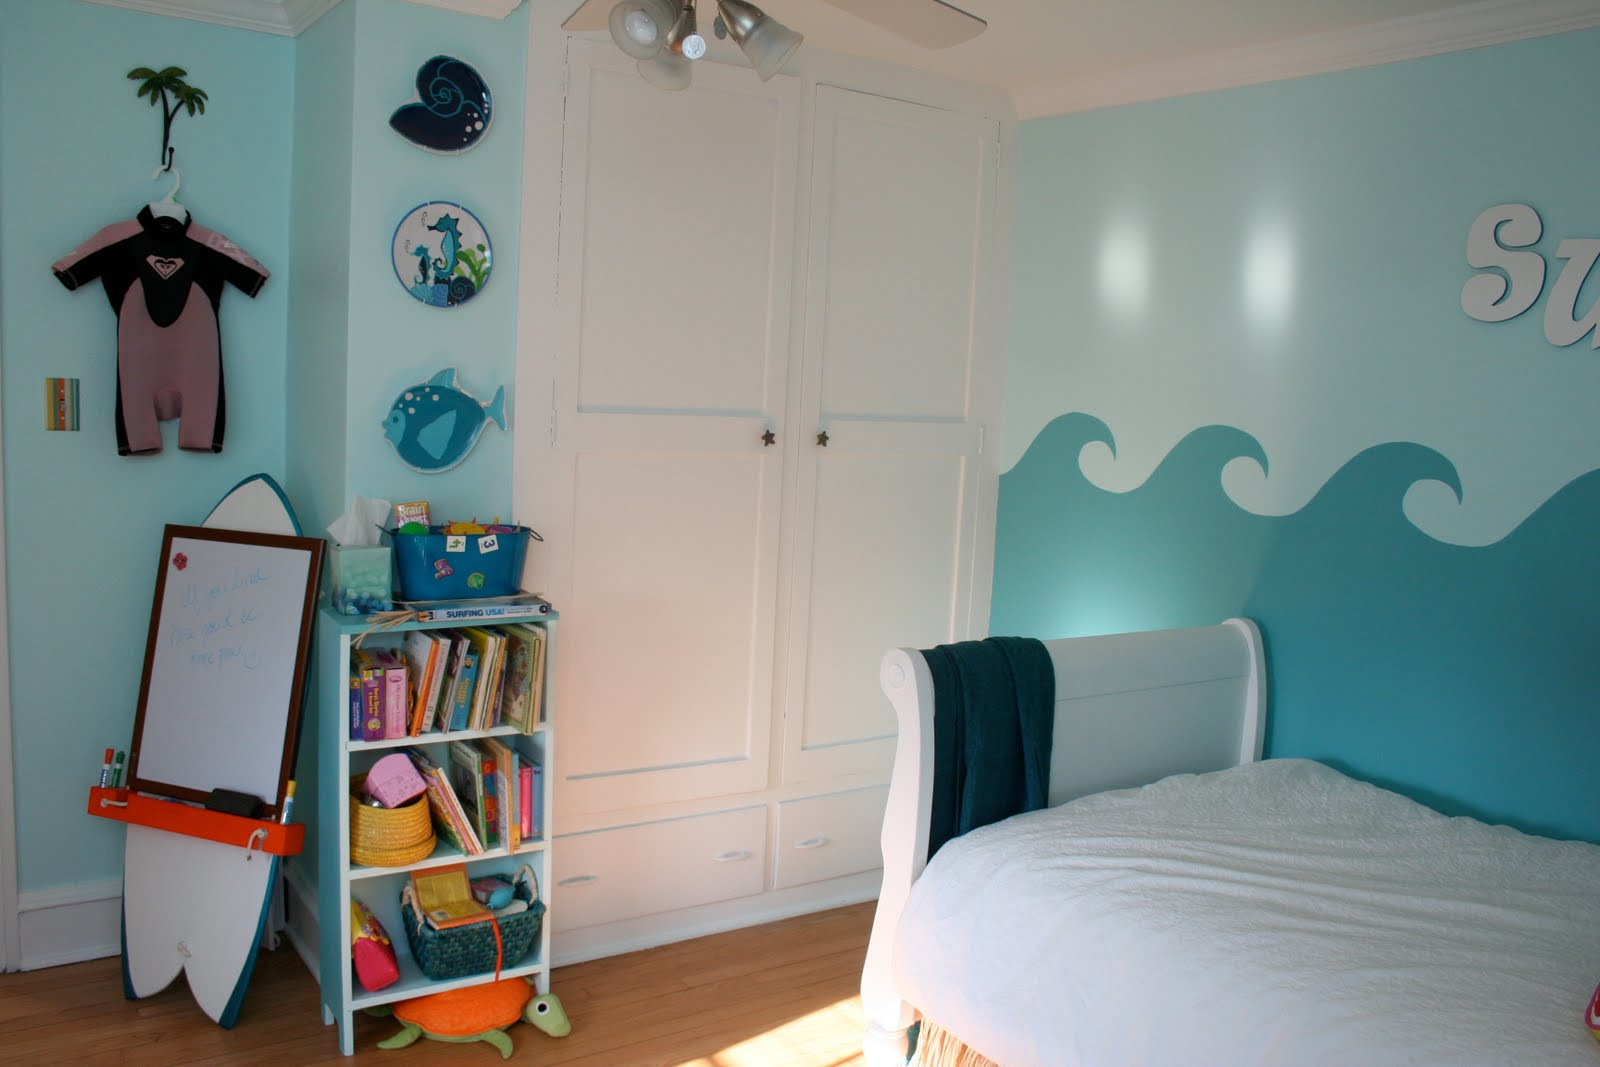 Surf Bedroom Decor
 Little Girl s Surfer Room Design Dazzle